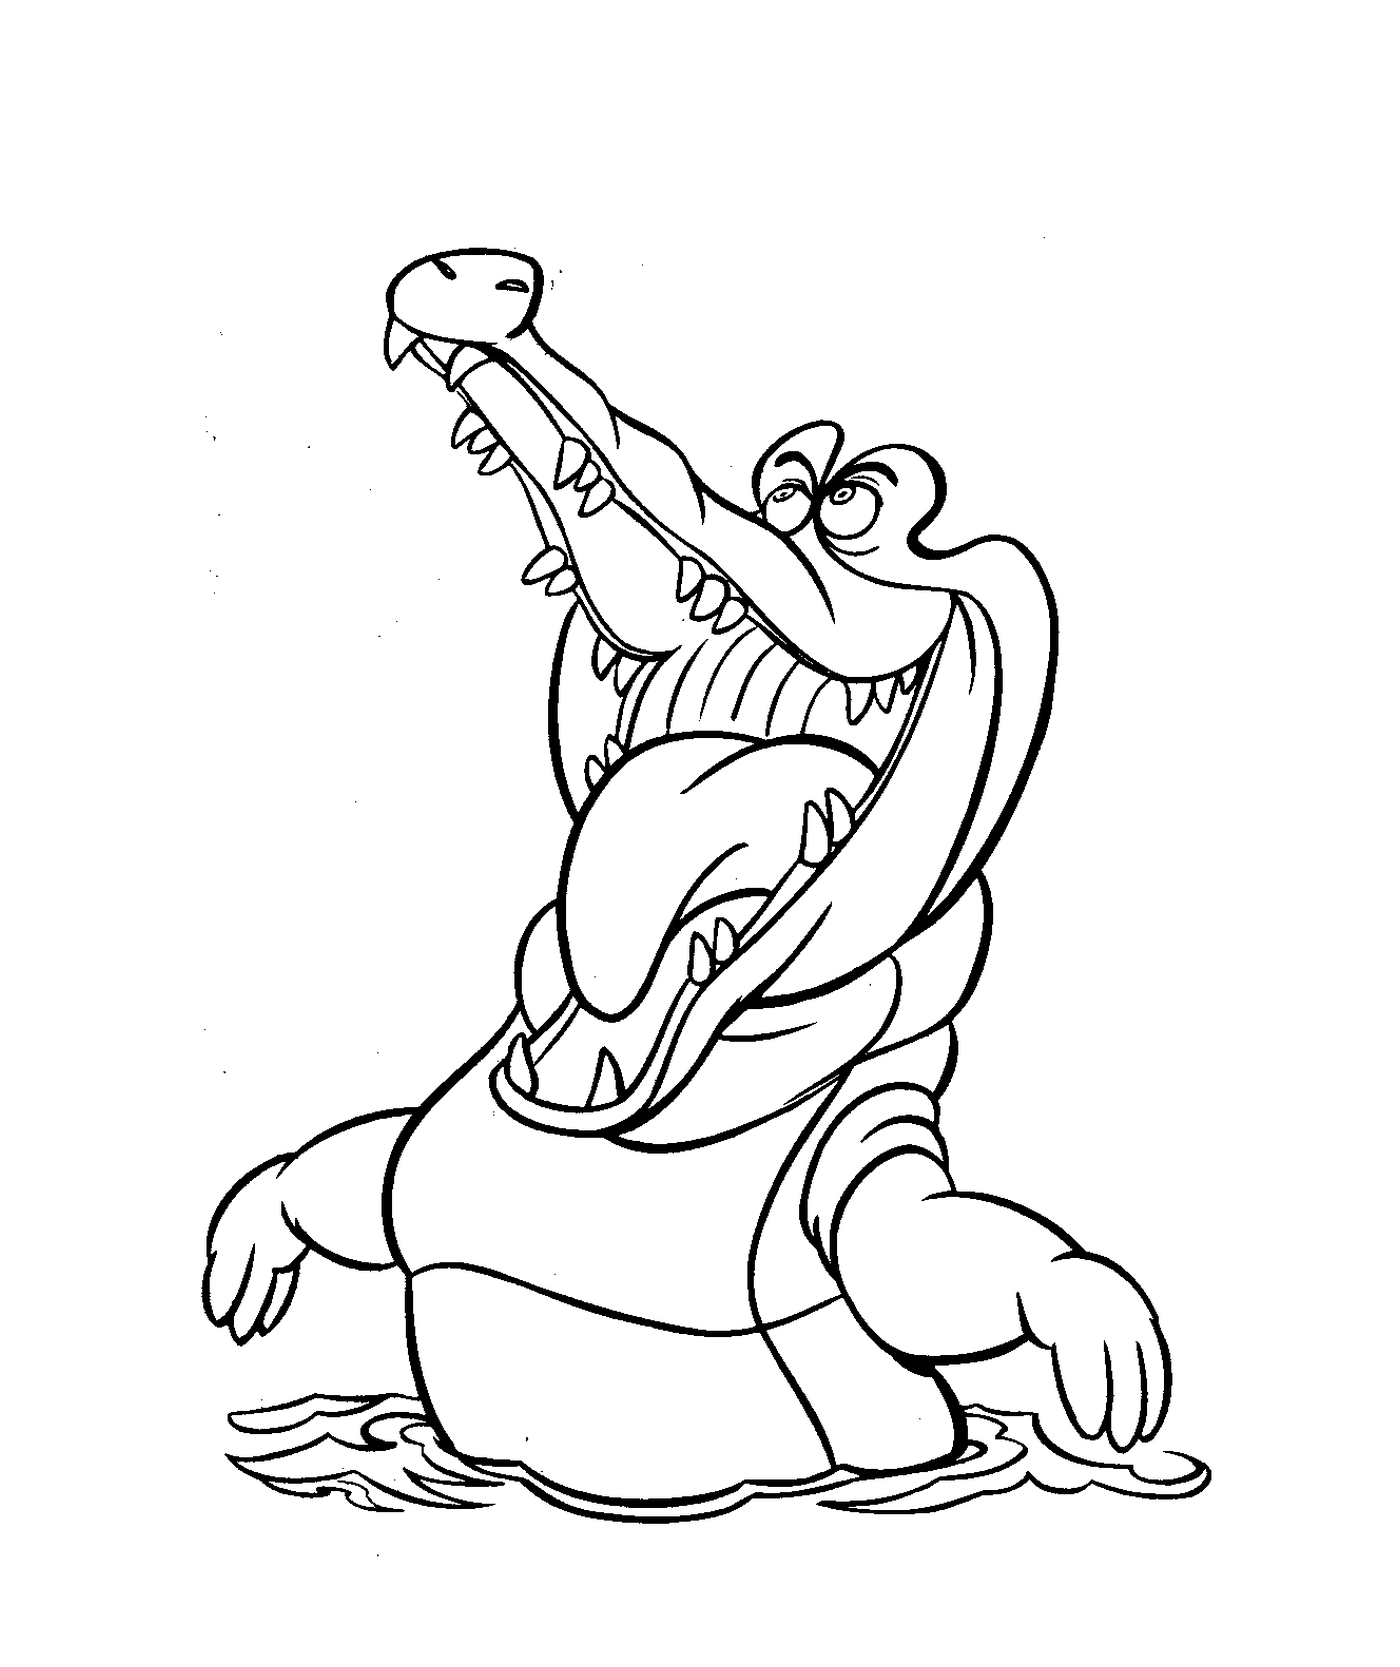  Крокодил Питера Пана, Диснейских персонажей для детей 